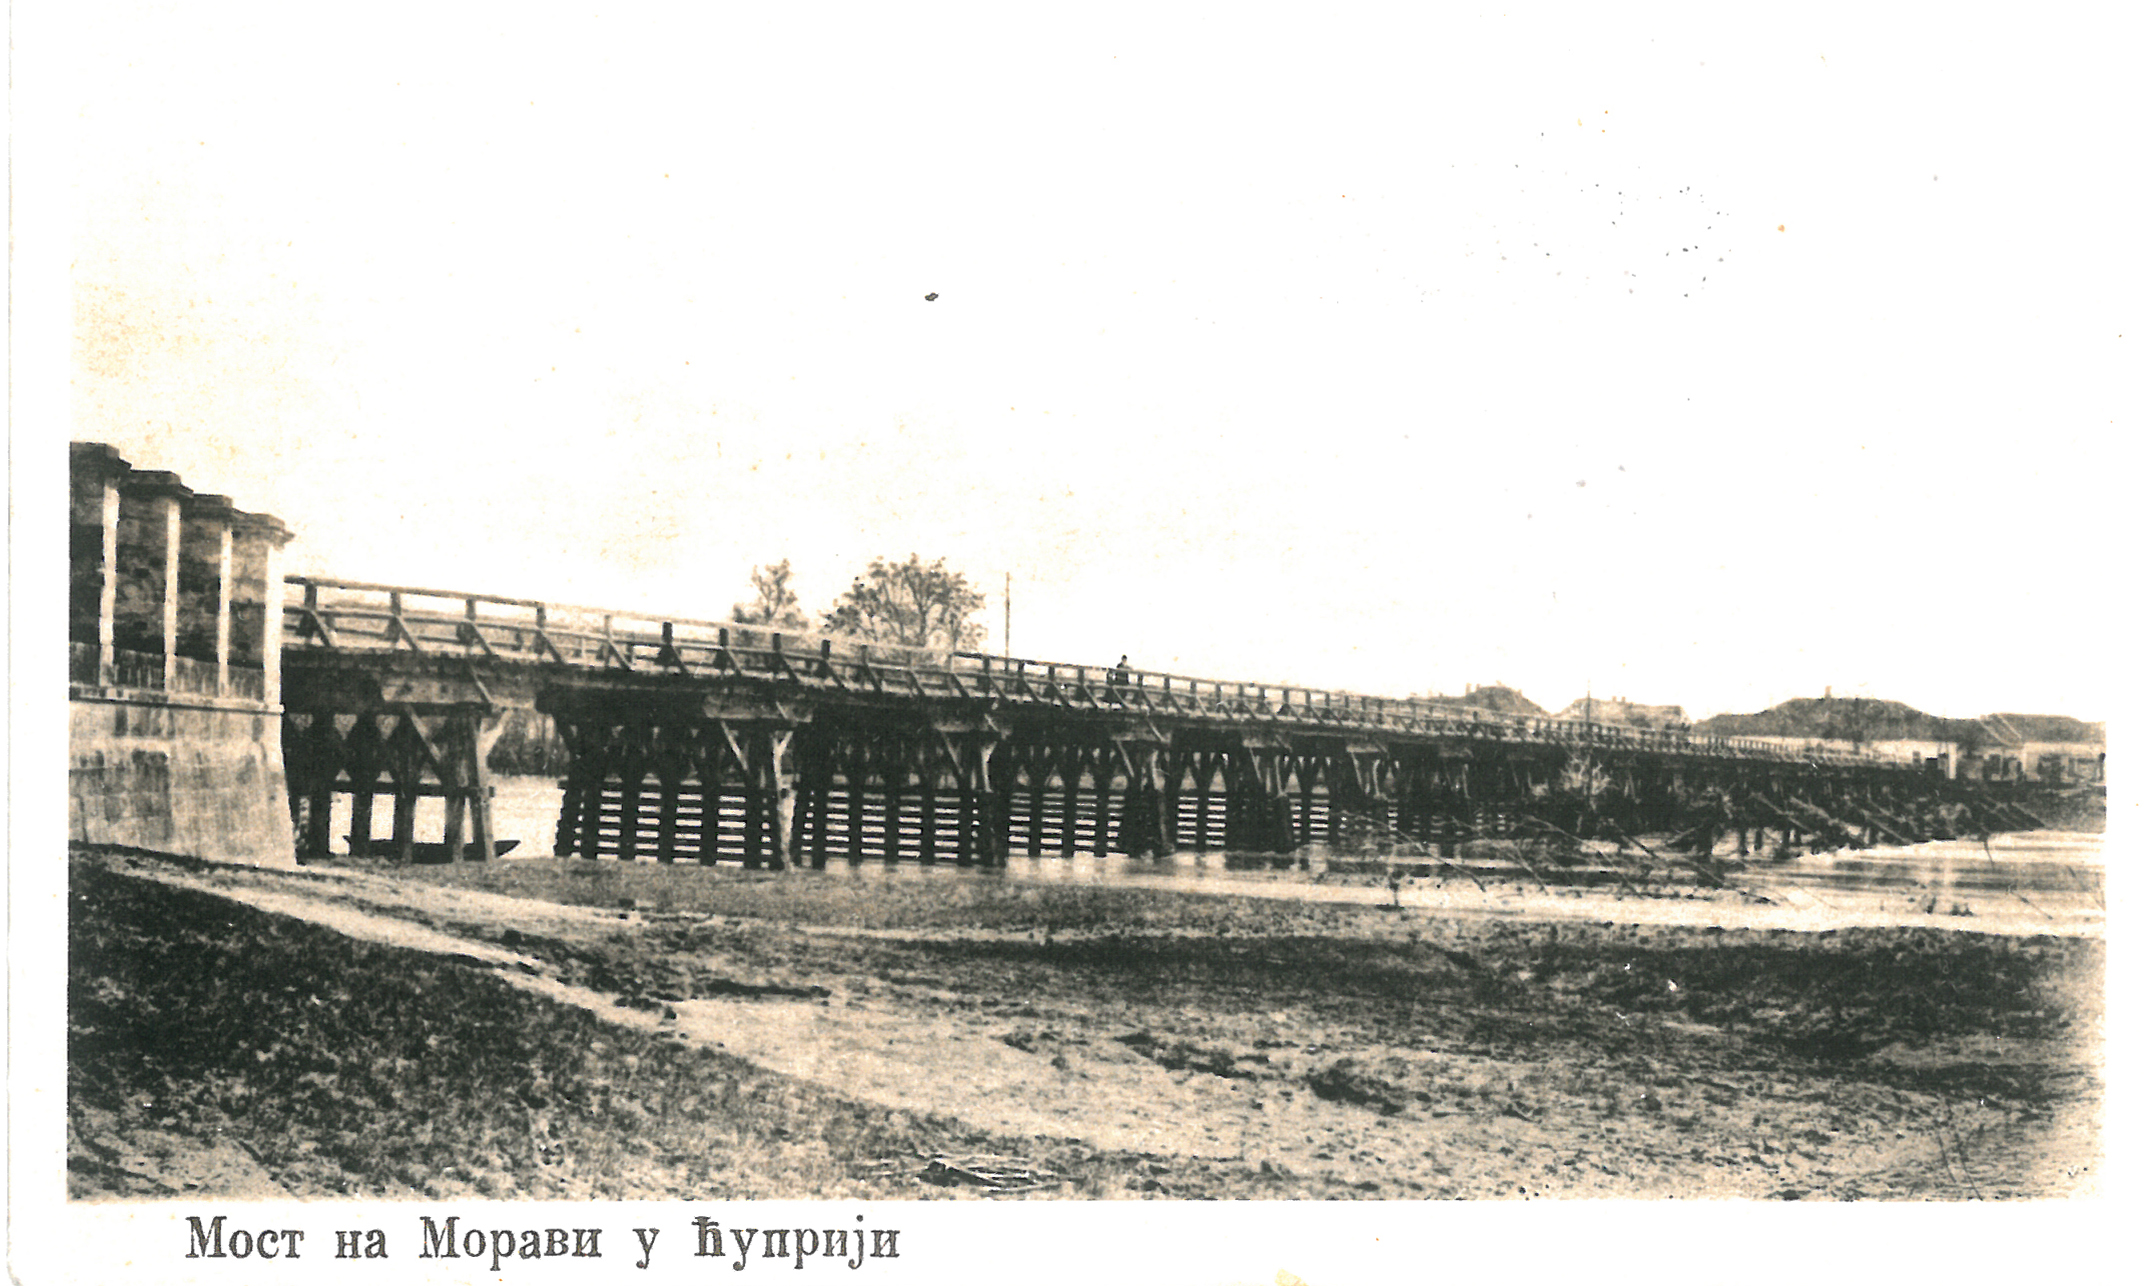 Drveni most preko Velike morave, delo vojnog inzenjera Stevana Binickog